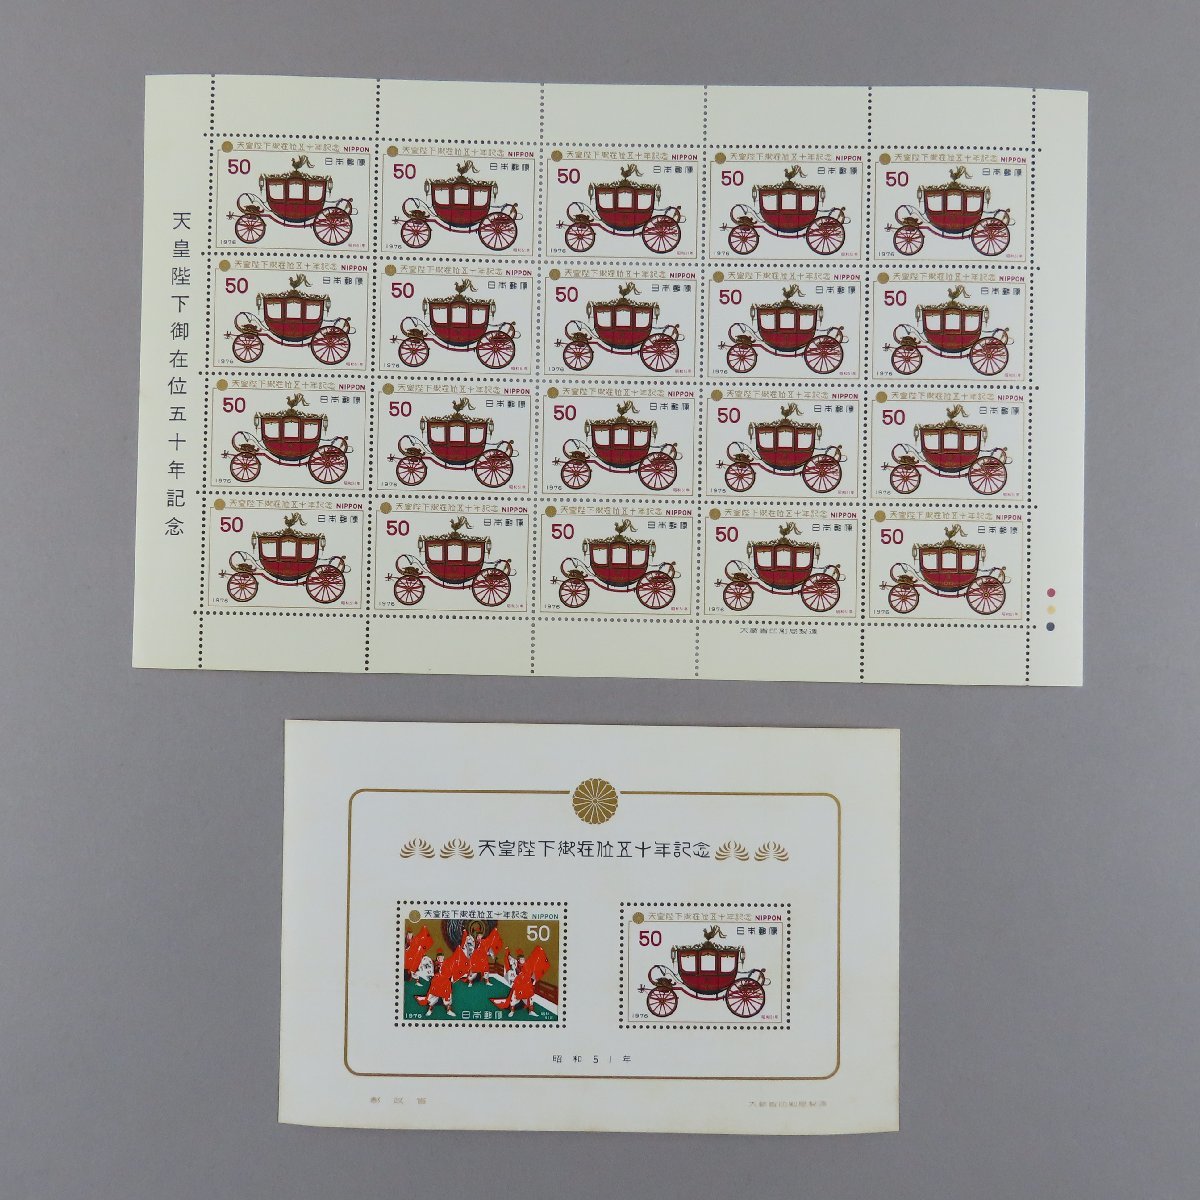 【切手2810】天皇陛下御在位五十年記念 昭和51年 1976年 50円20面1シート/小型シート 1シート_画像1